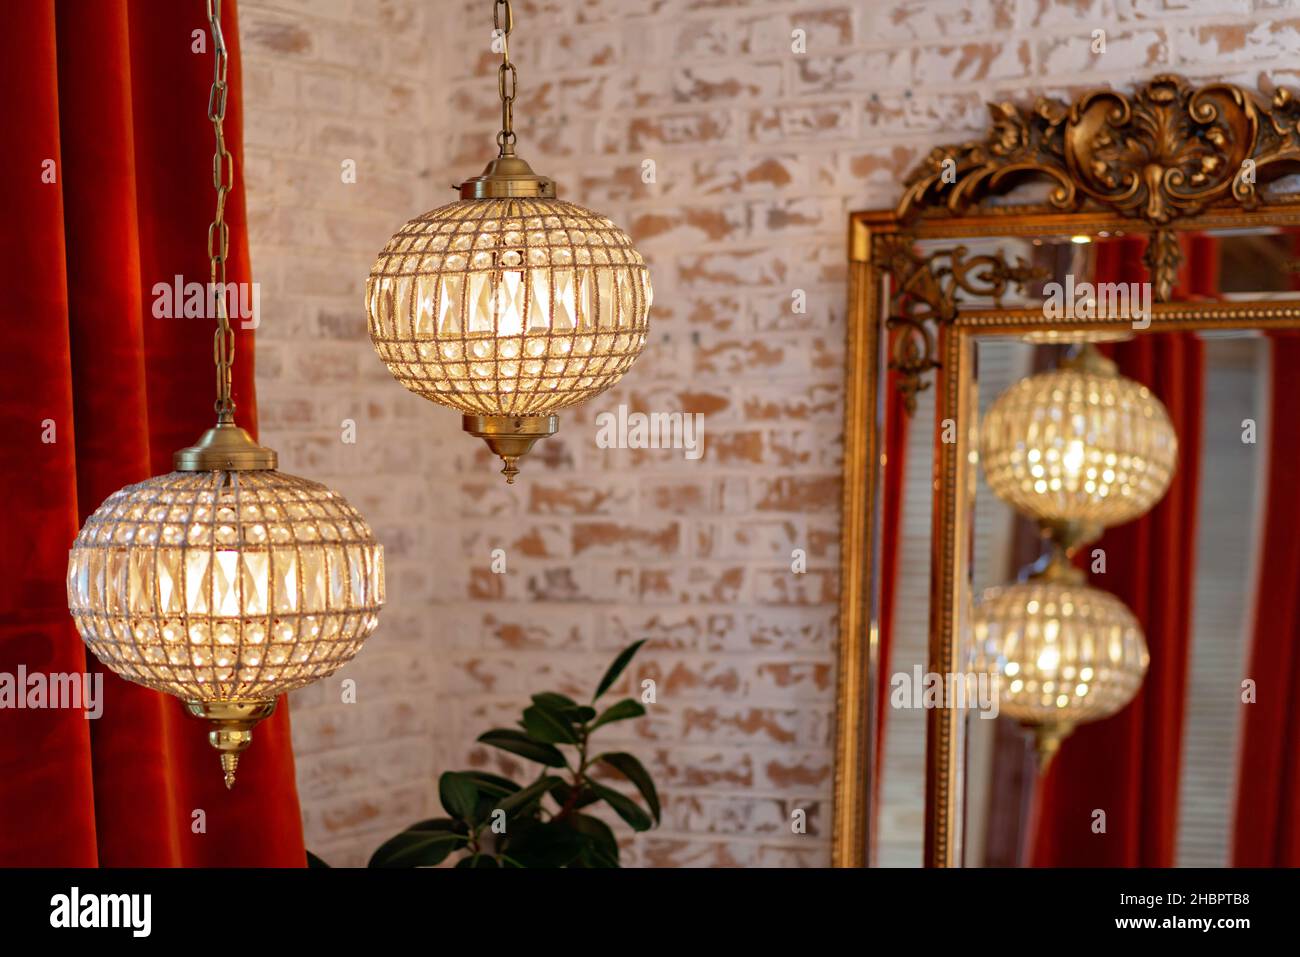 Interni francesi moderni con tende bordeaux corduroy, specchio d'oro vintage e lampadari di cristallo contro una parete di mattoni. Messa a fuoco selettiva soft. Foto Stock